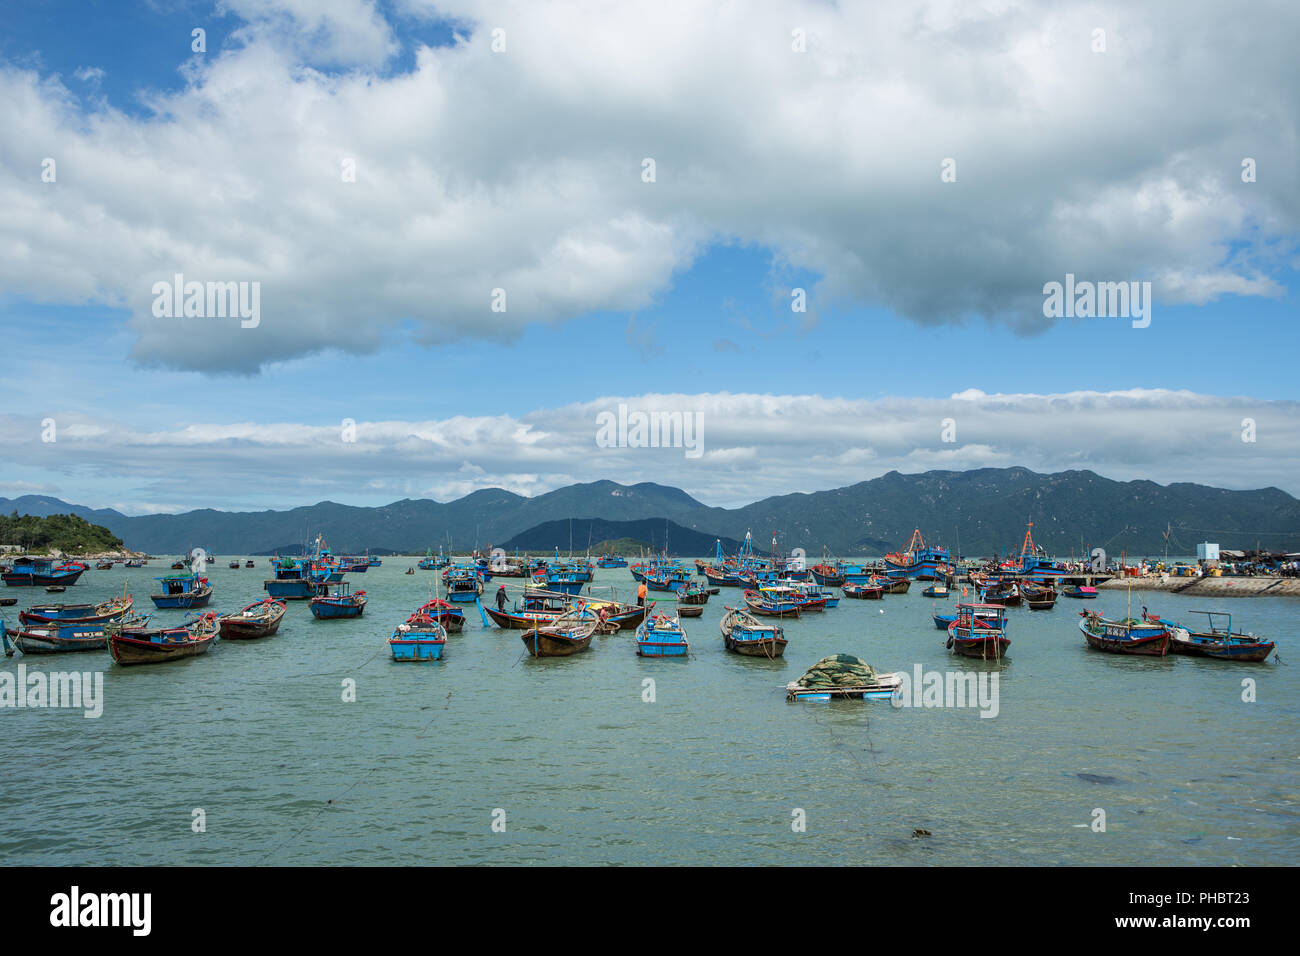 fisherman's Wharf Harbor in Vietnam Stock Photo